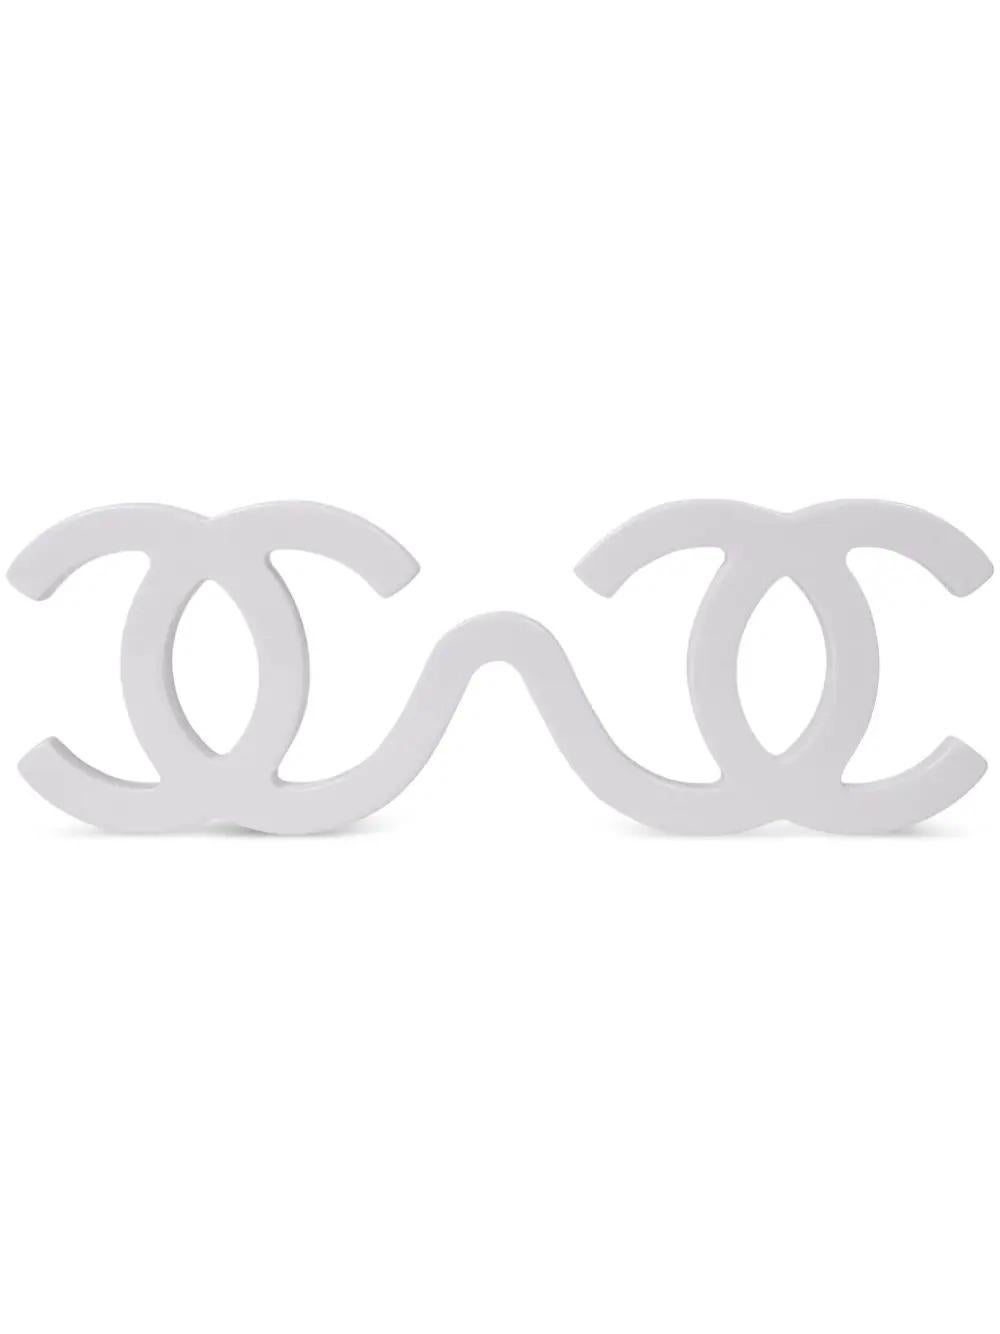 Gris Lunettes de soleil Chanel blanc 1994 Runway Karl Lagerfeld CC Logo Iconic Rare en vente